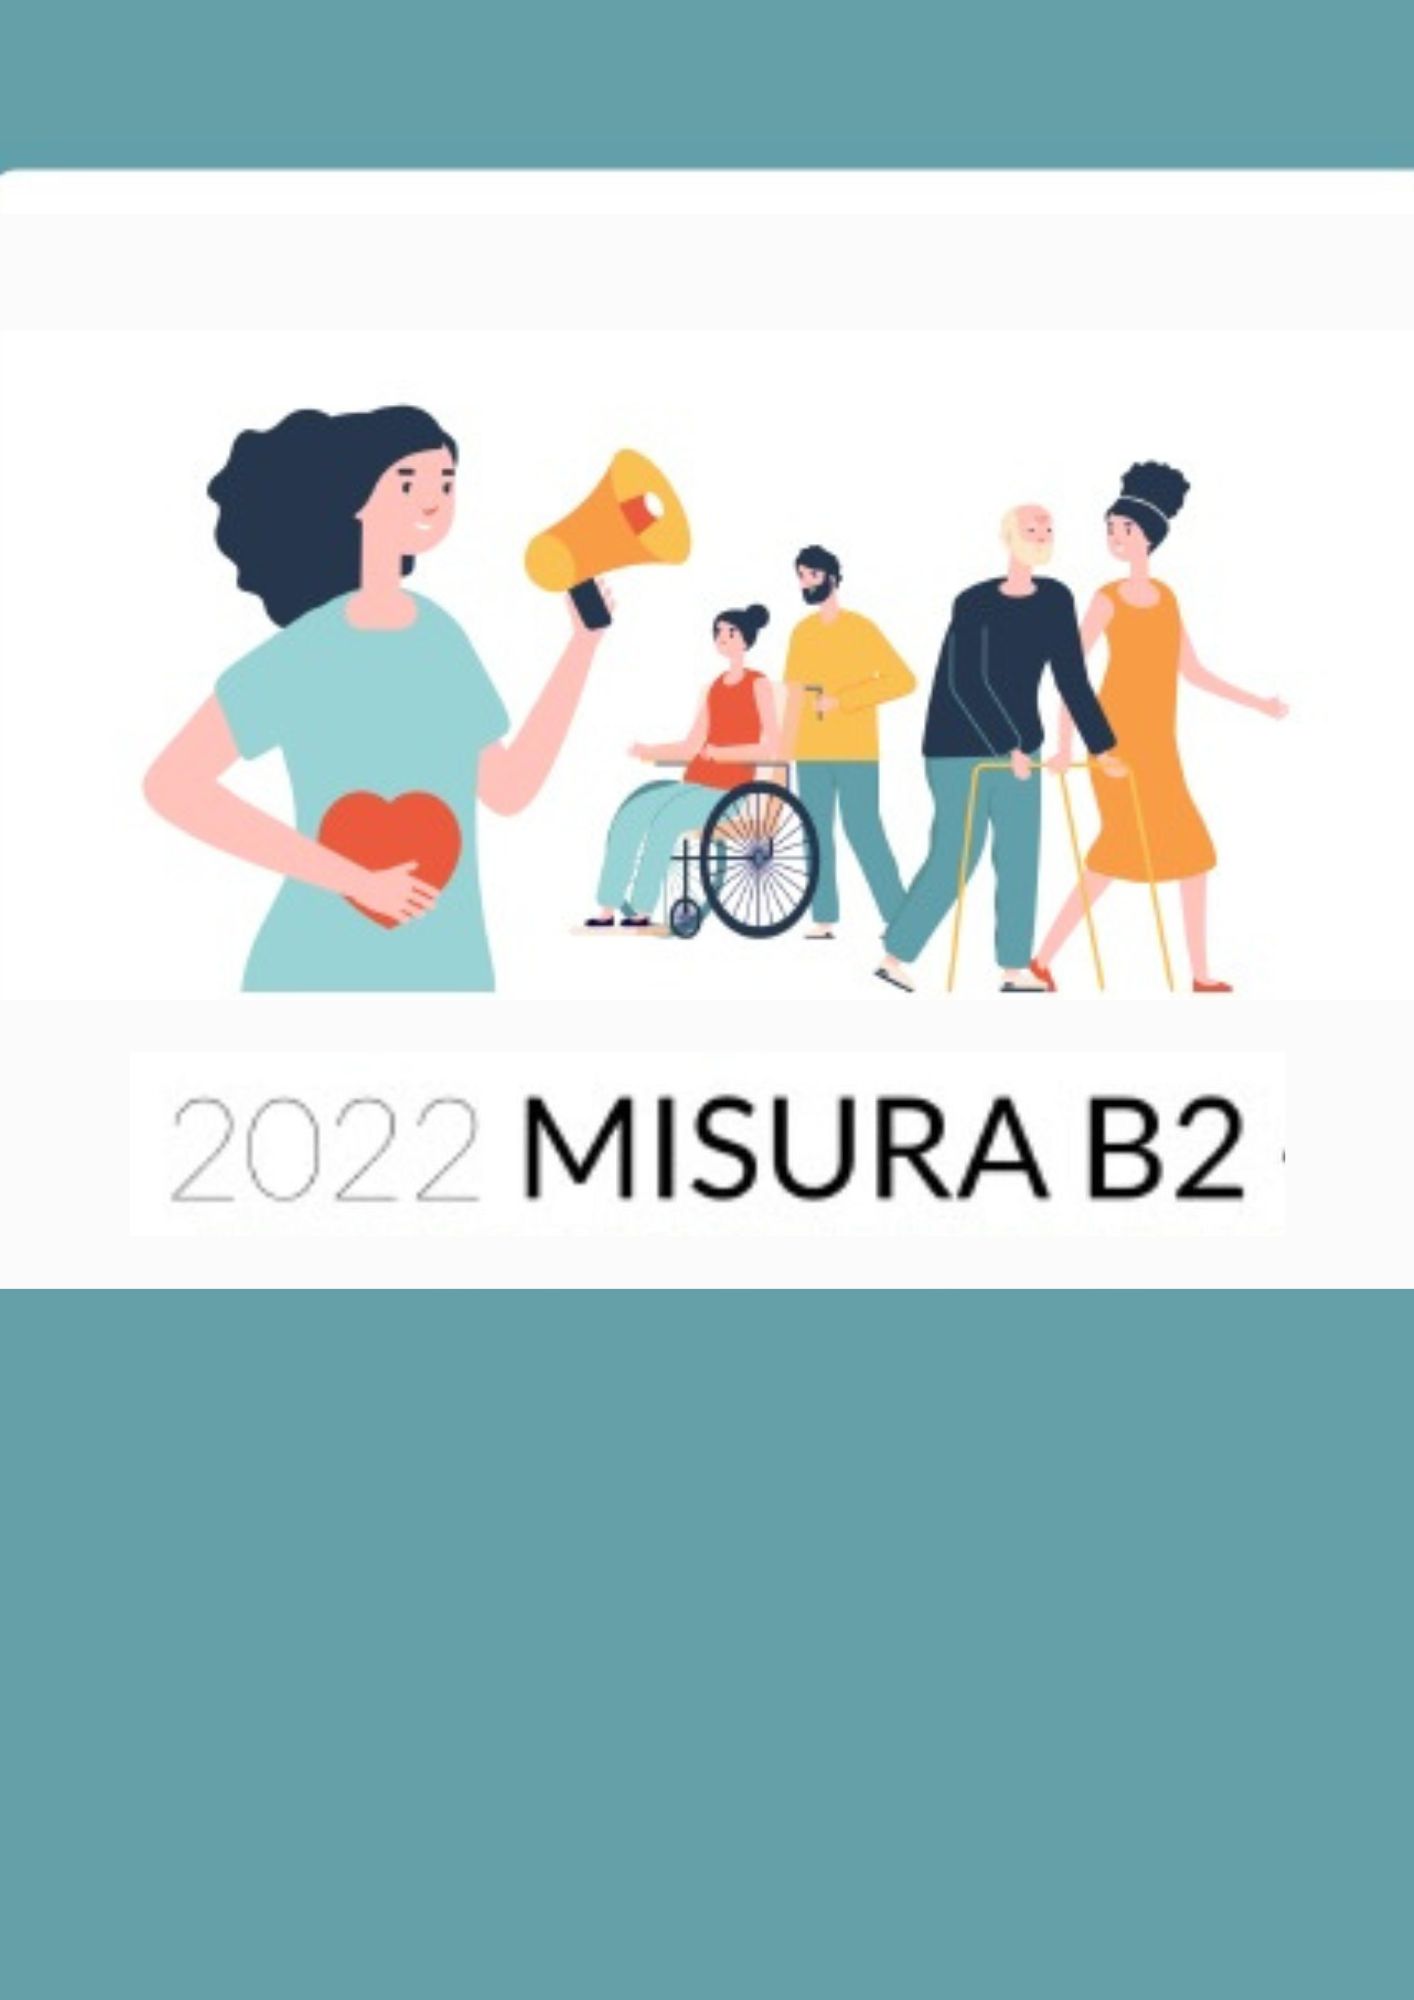 Misura B2 anno 2022 – Riapertura Bando B2